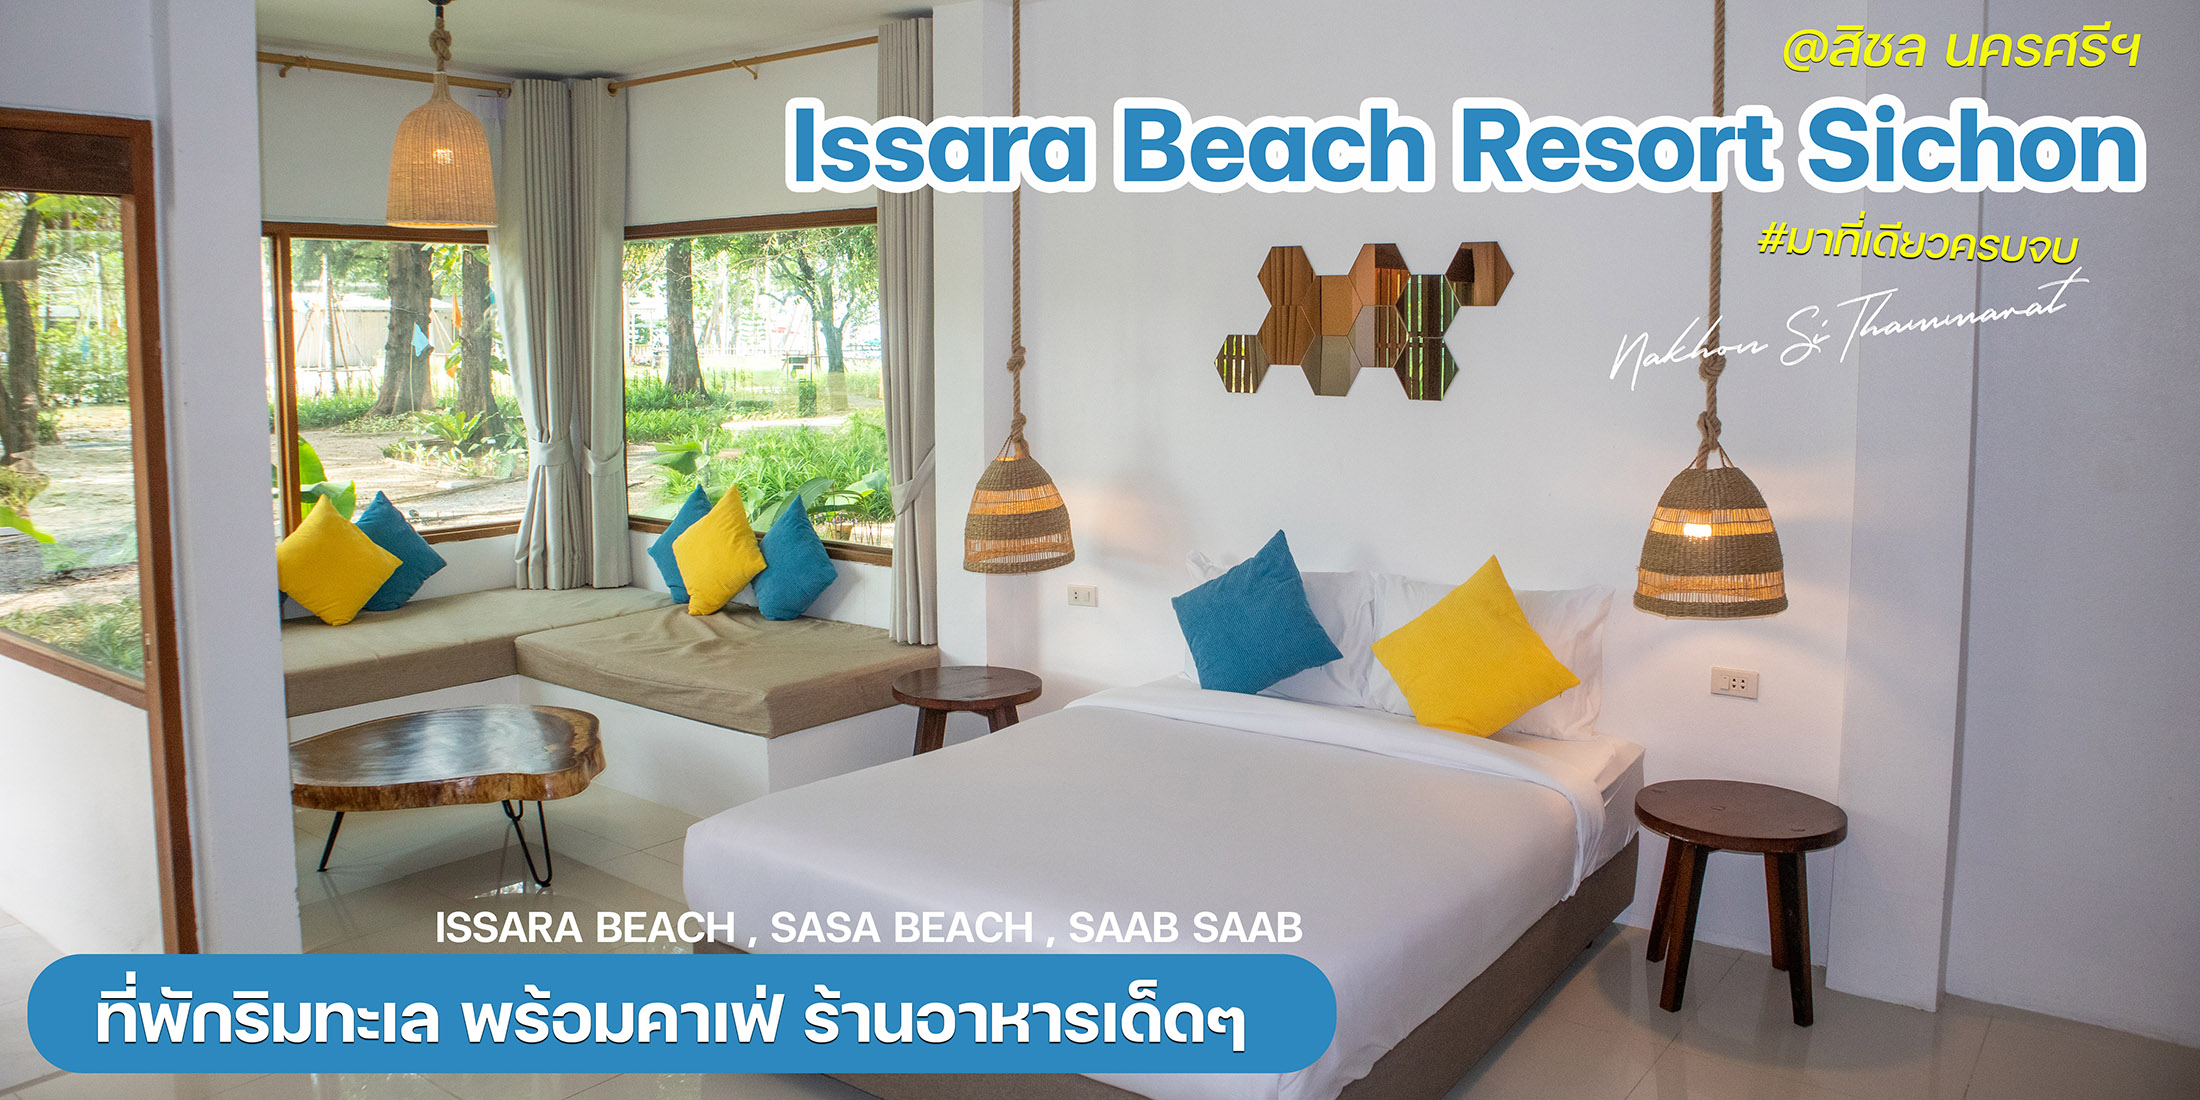 IssaraBeach Resort Sichon  ที่พักสุดชิวริมทะเลนครศรีธรรมราช บอกเลยว่ามาที่นี่มีครบ ทั้งที่พัก คาเฟ่ ร้านอาหาร กิจกรรมทางน้ำ แถมยังมีโชว์ควงไฟด้วยนะ